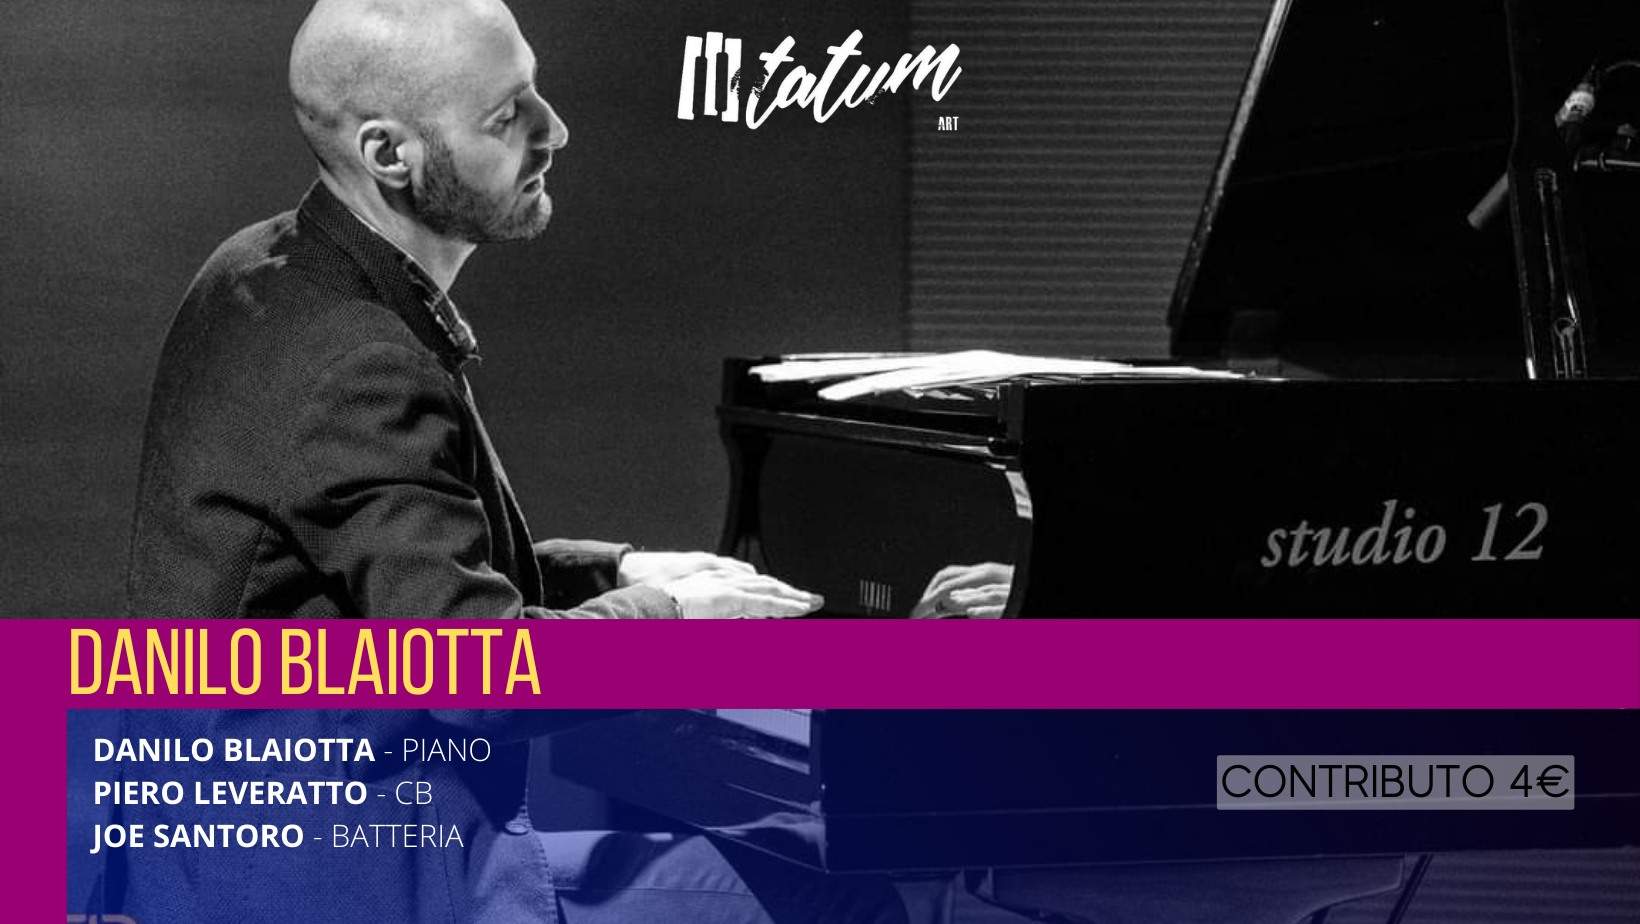 Danilo Blaiotta live at Tatum Art - Palermo / March 3 & 4, 2023